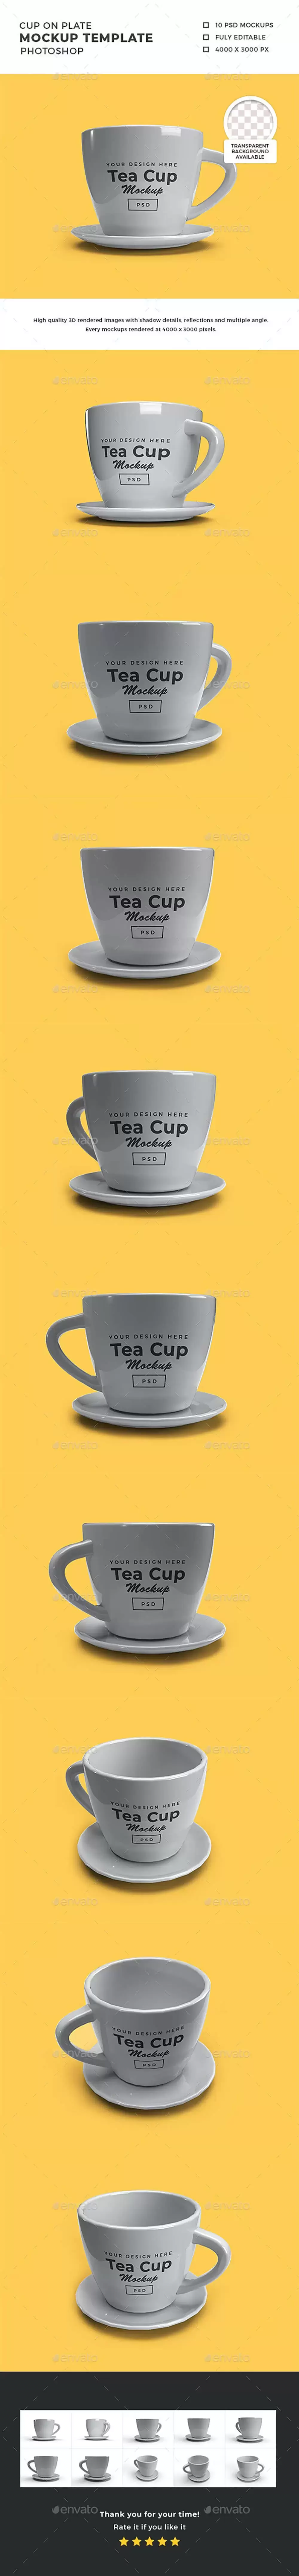 3D陶瓷茶托茶杯/咖啡杯设计样机 (psd)免费下载插图